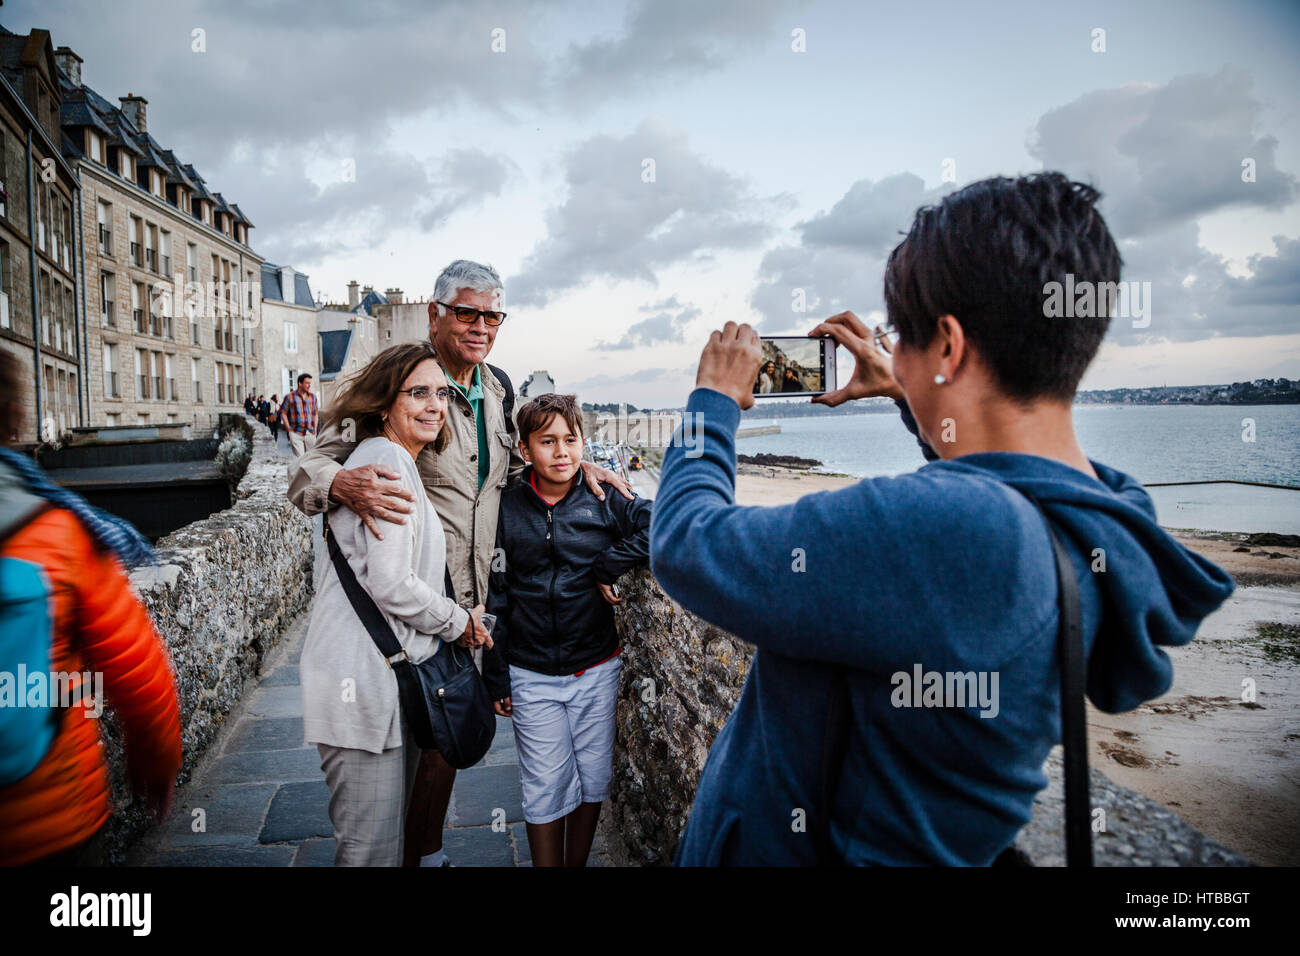 Menschen, die Bilder an den Wänden der Stadt. Saint-Malo ist eine Stadt in der Bretagne im Nordwesten Frankreichs Stockfoto